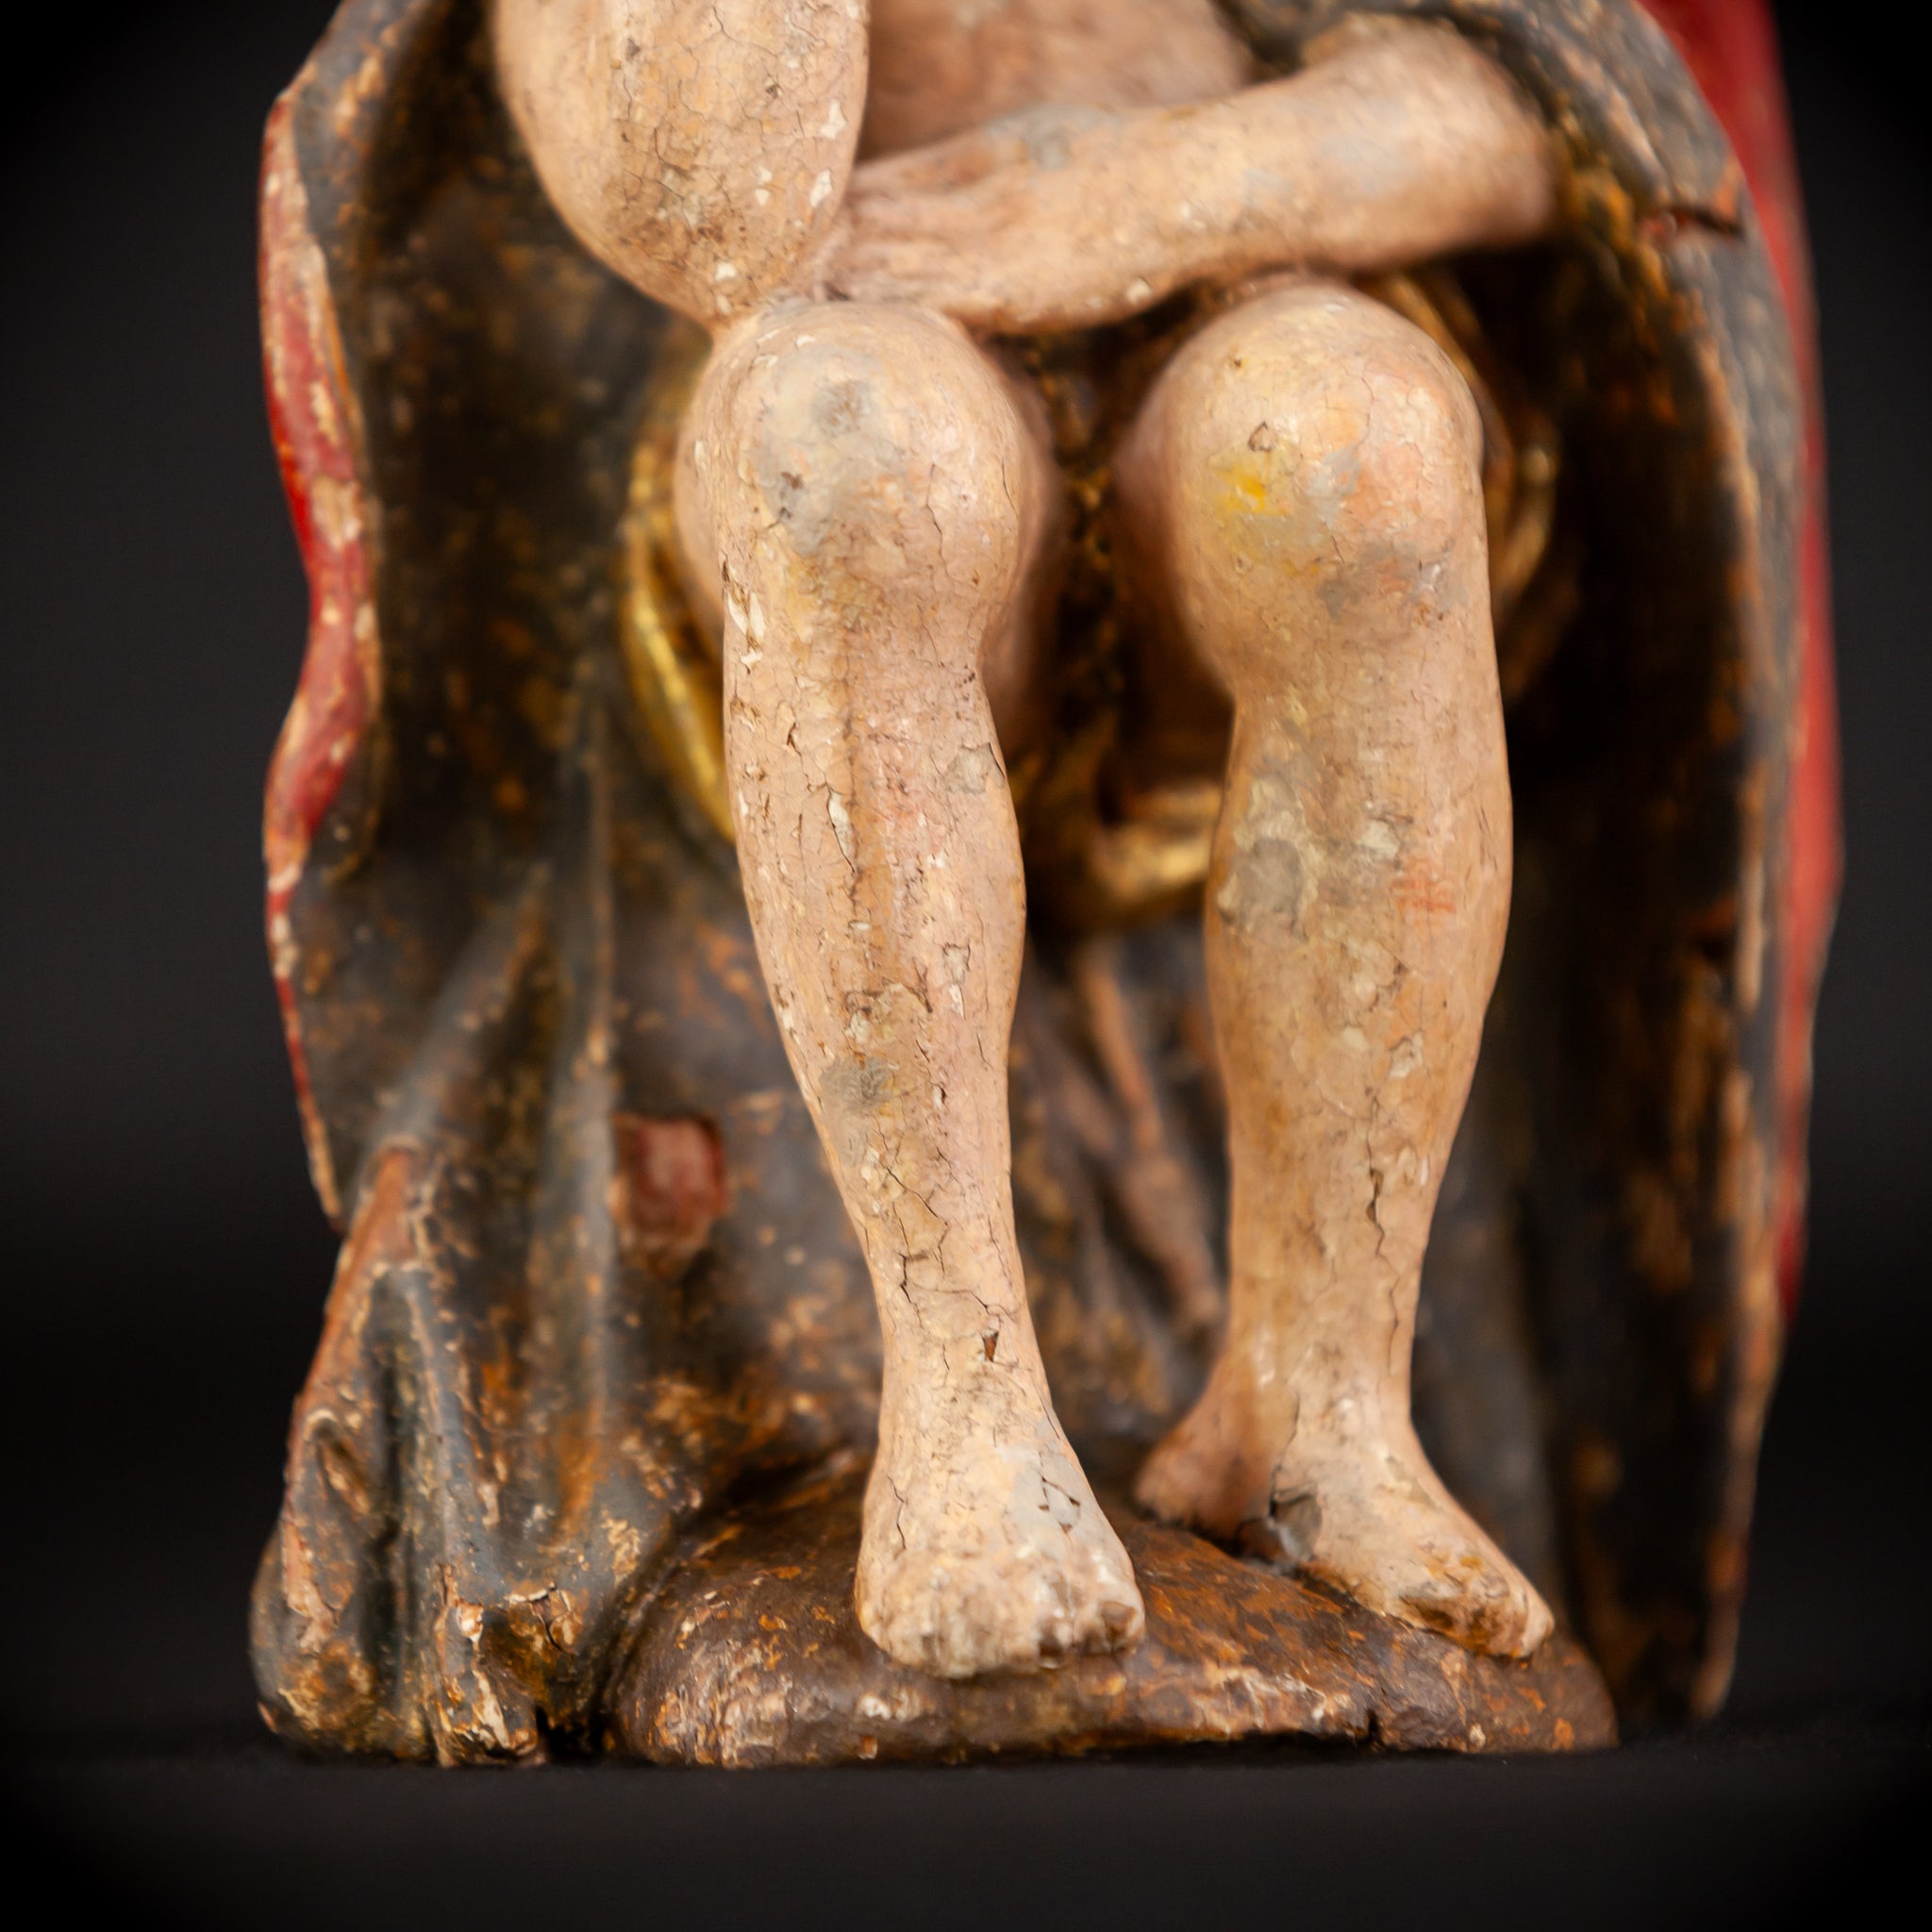 Pensive Christ Wooden Sculpture | 1700s Antique | 7.7" / 19.5 cm